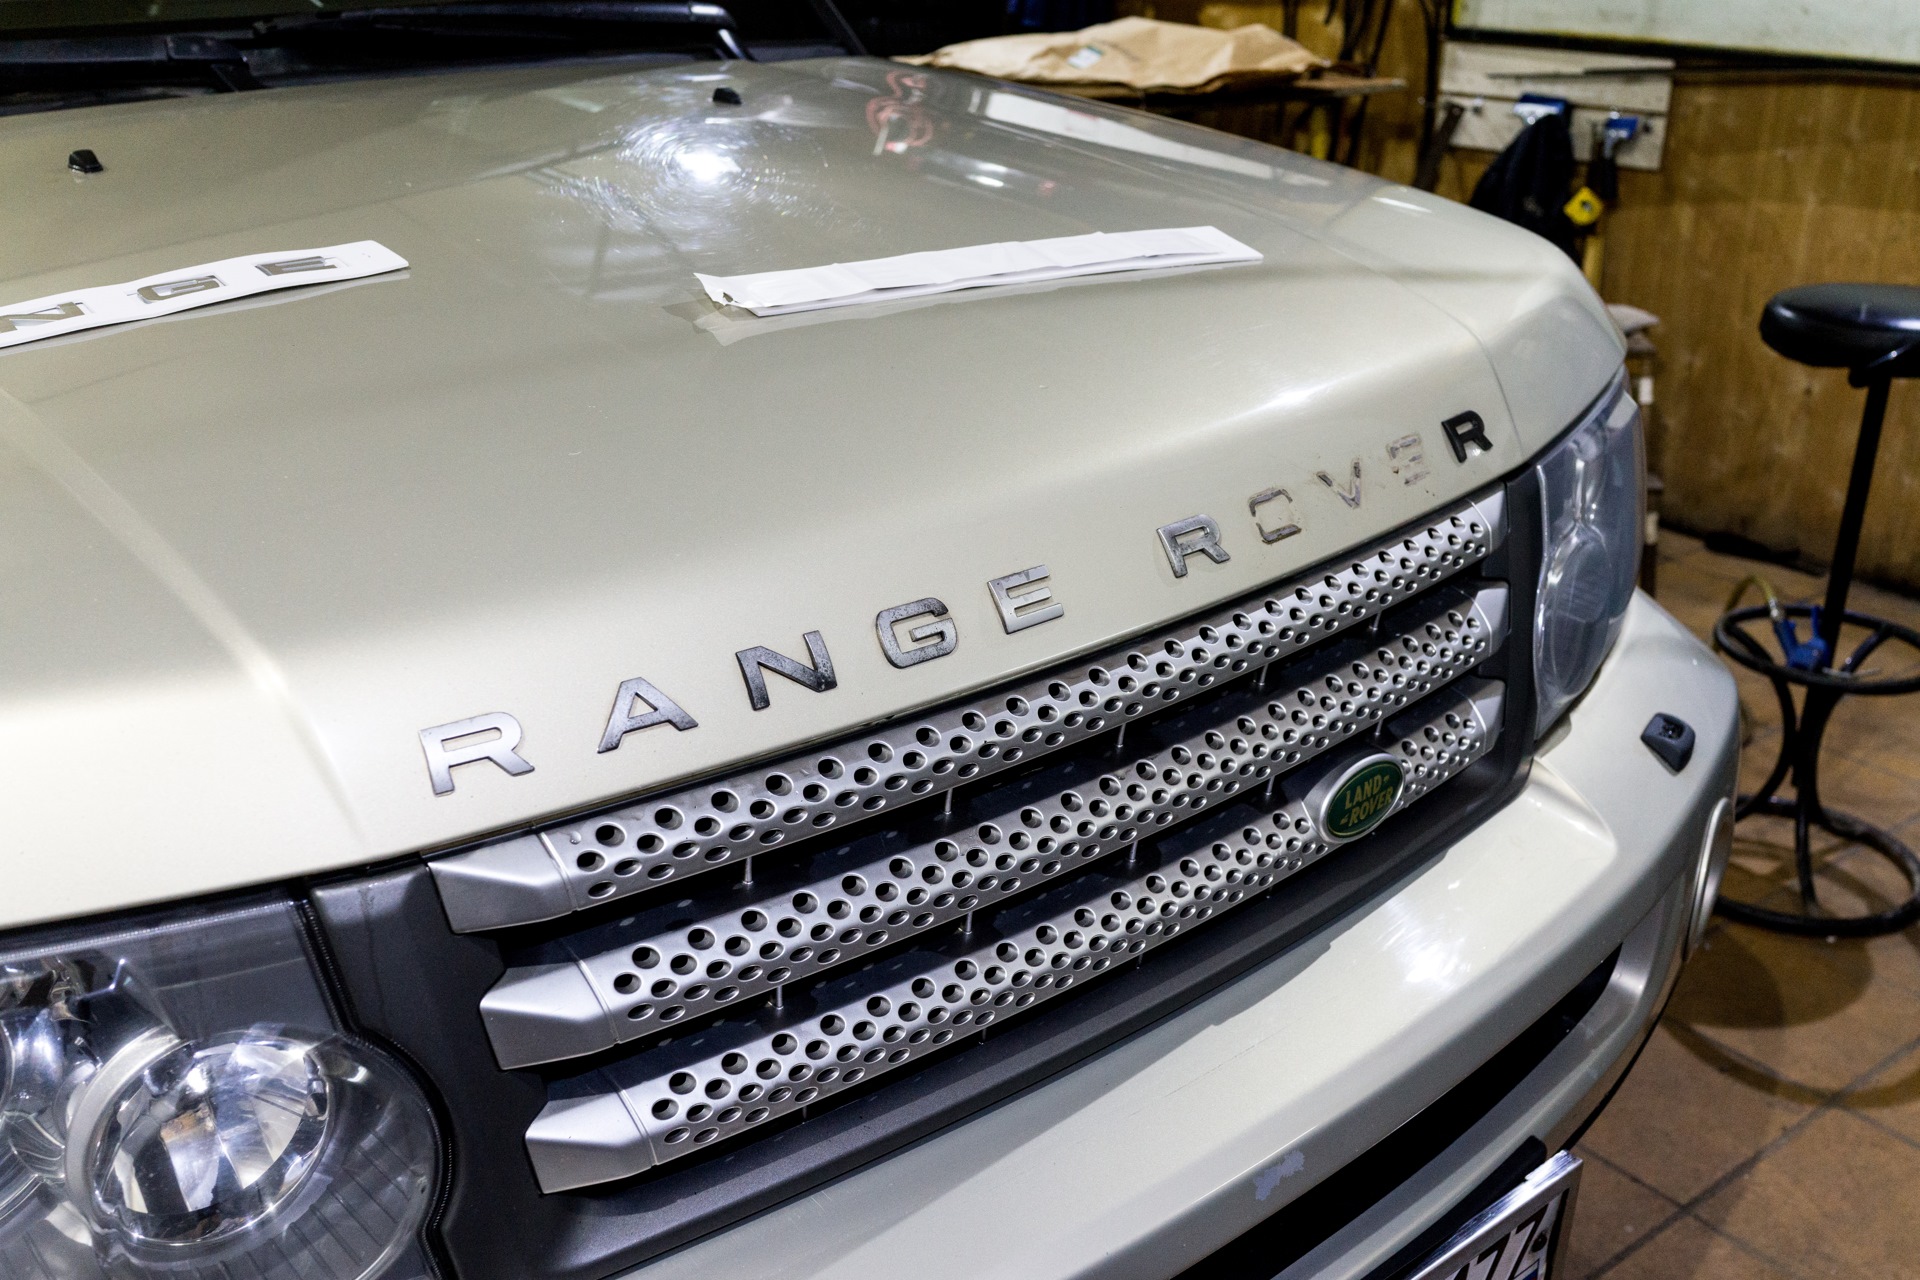 Капот ленд ровер. Капот Рендж Ровер. Range Rover капот. Капот ленд Ровер Рендж Ровер. Капот range Rover Sport.